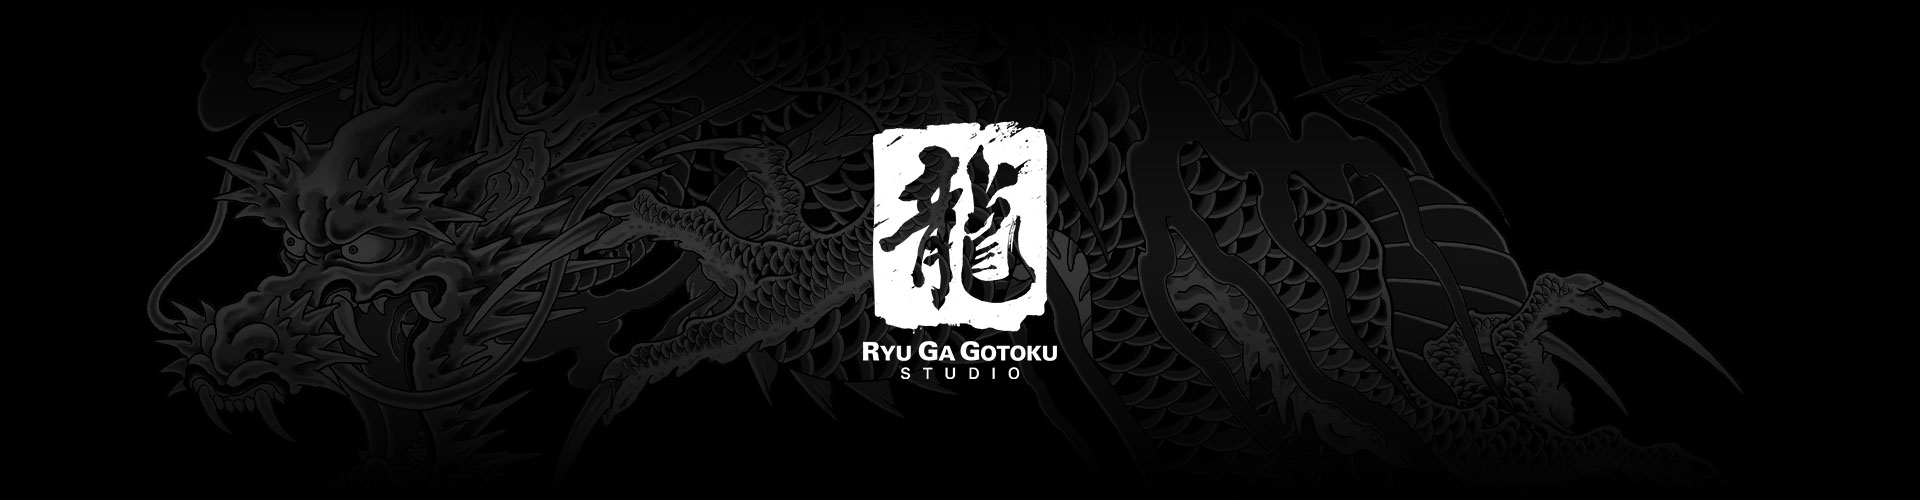 Ryu Ga Gotoku Studio-logo met een grijze draaktatoeage als achtergrond.